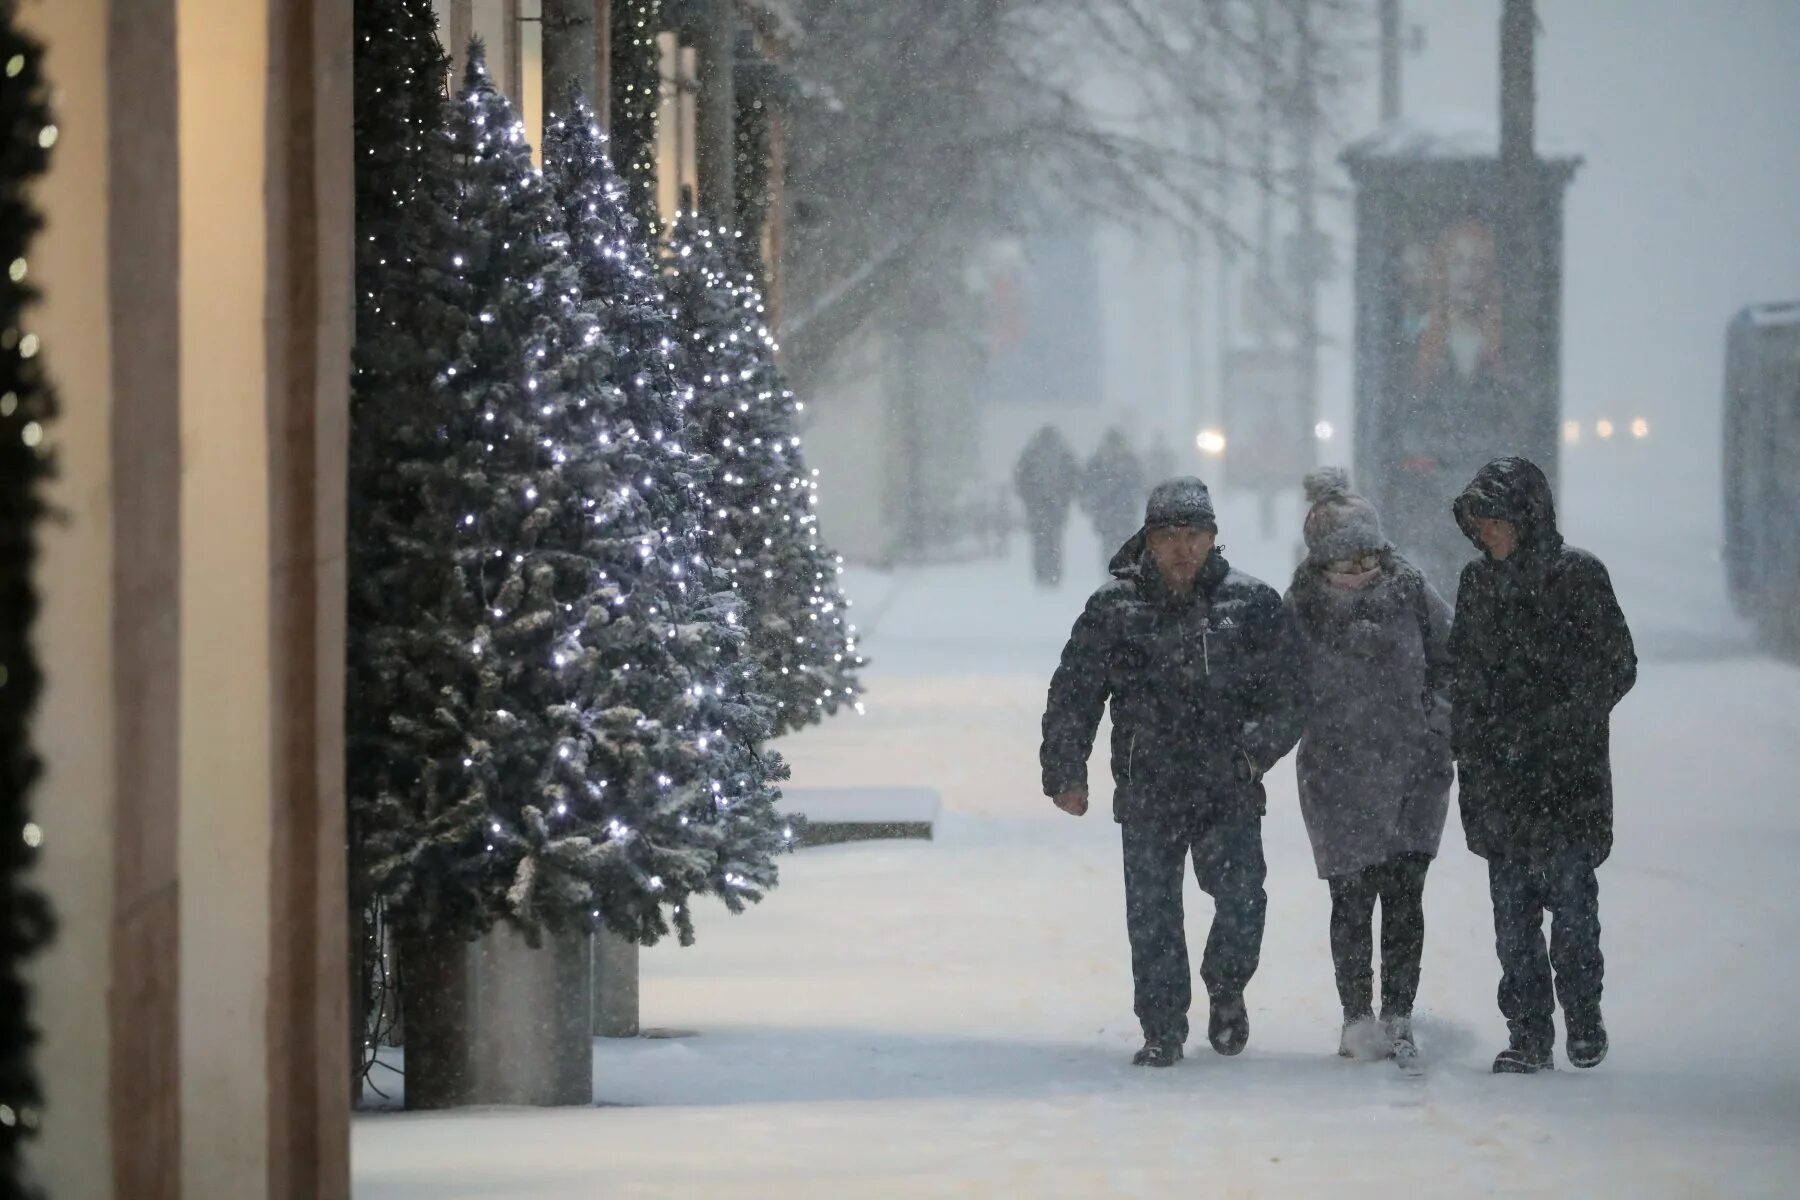 Сильный снегопад будет сегодня. Снегопады в центральной России январь 2022. Фото сегодняшней метели в Москве. Снег в Москве сегодня фото.